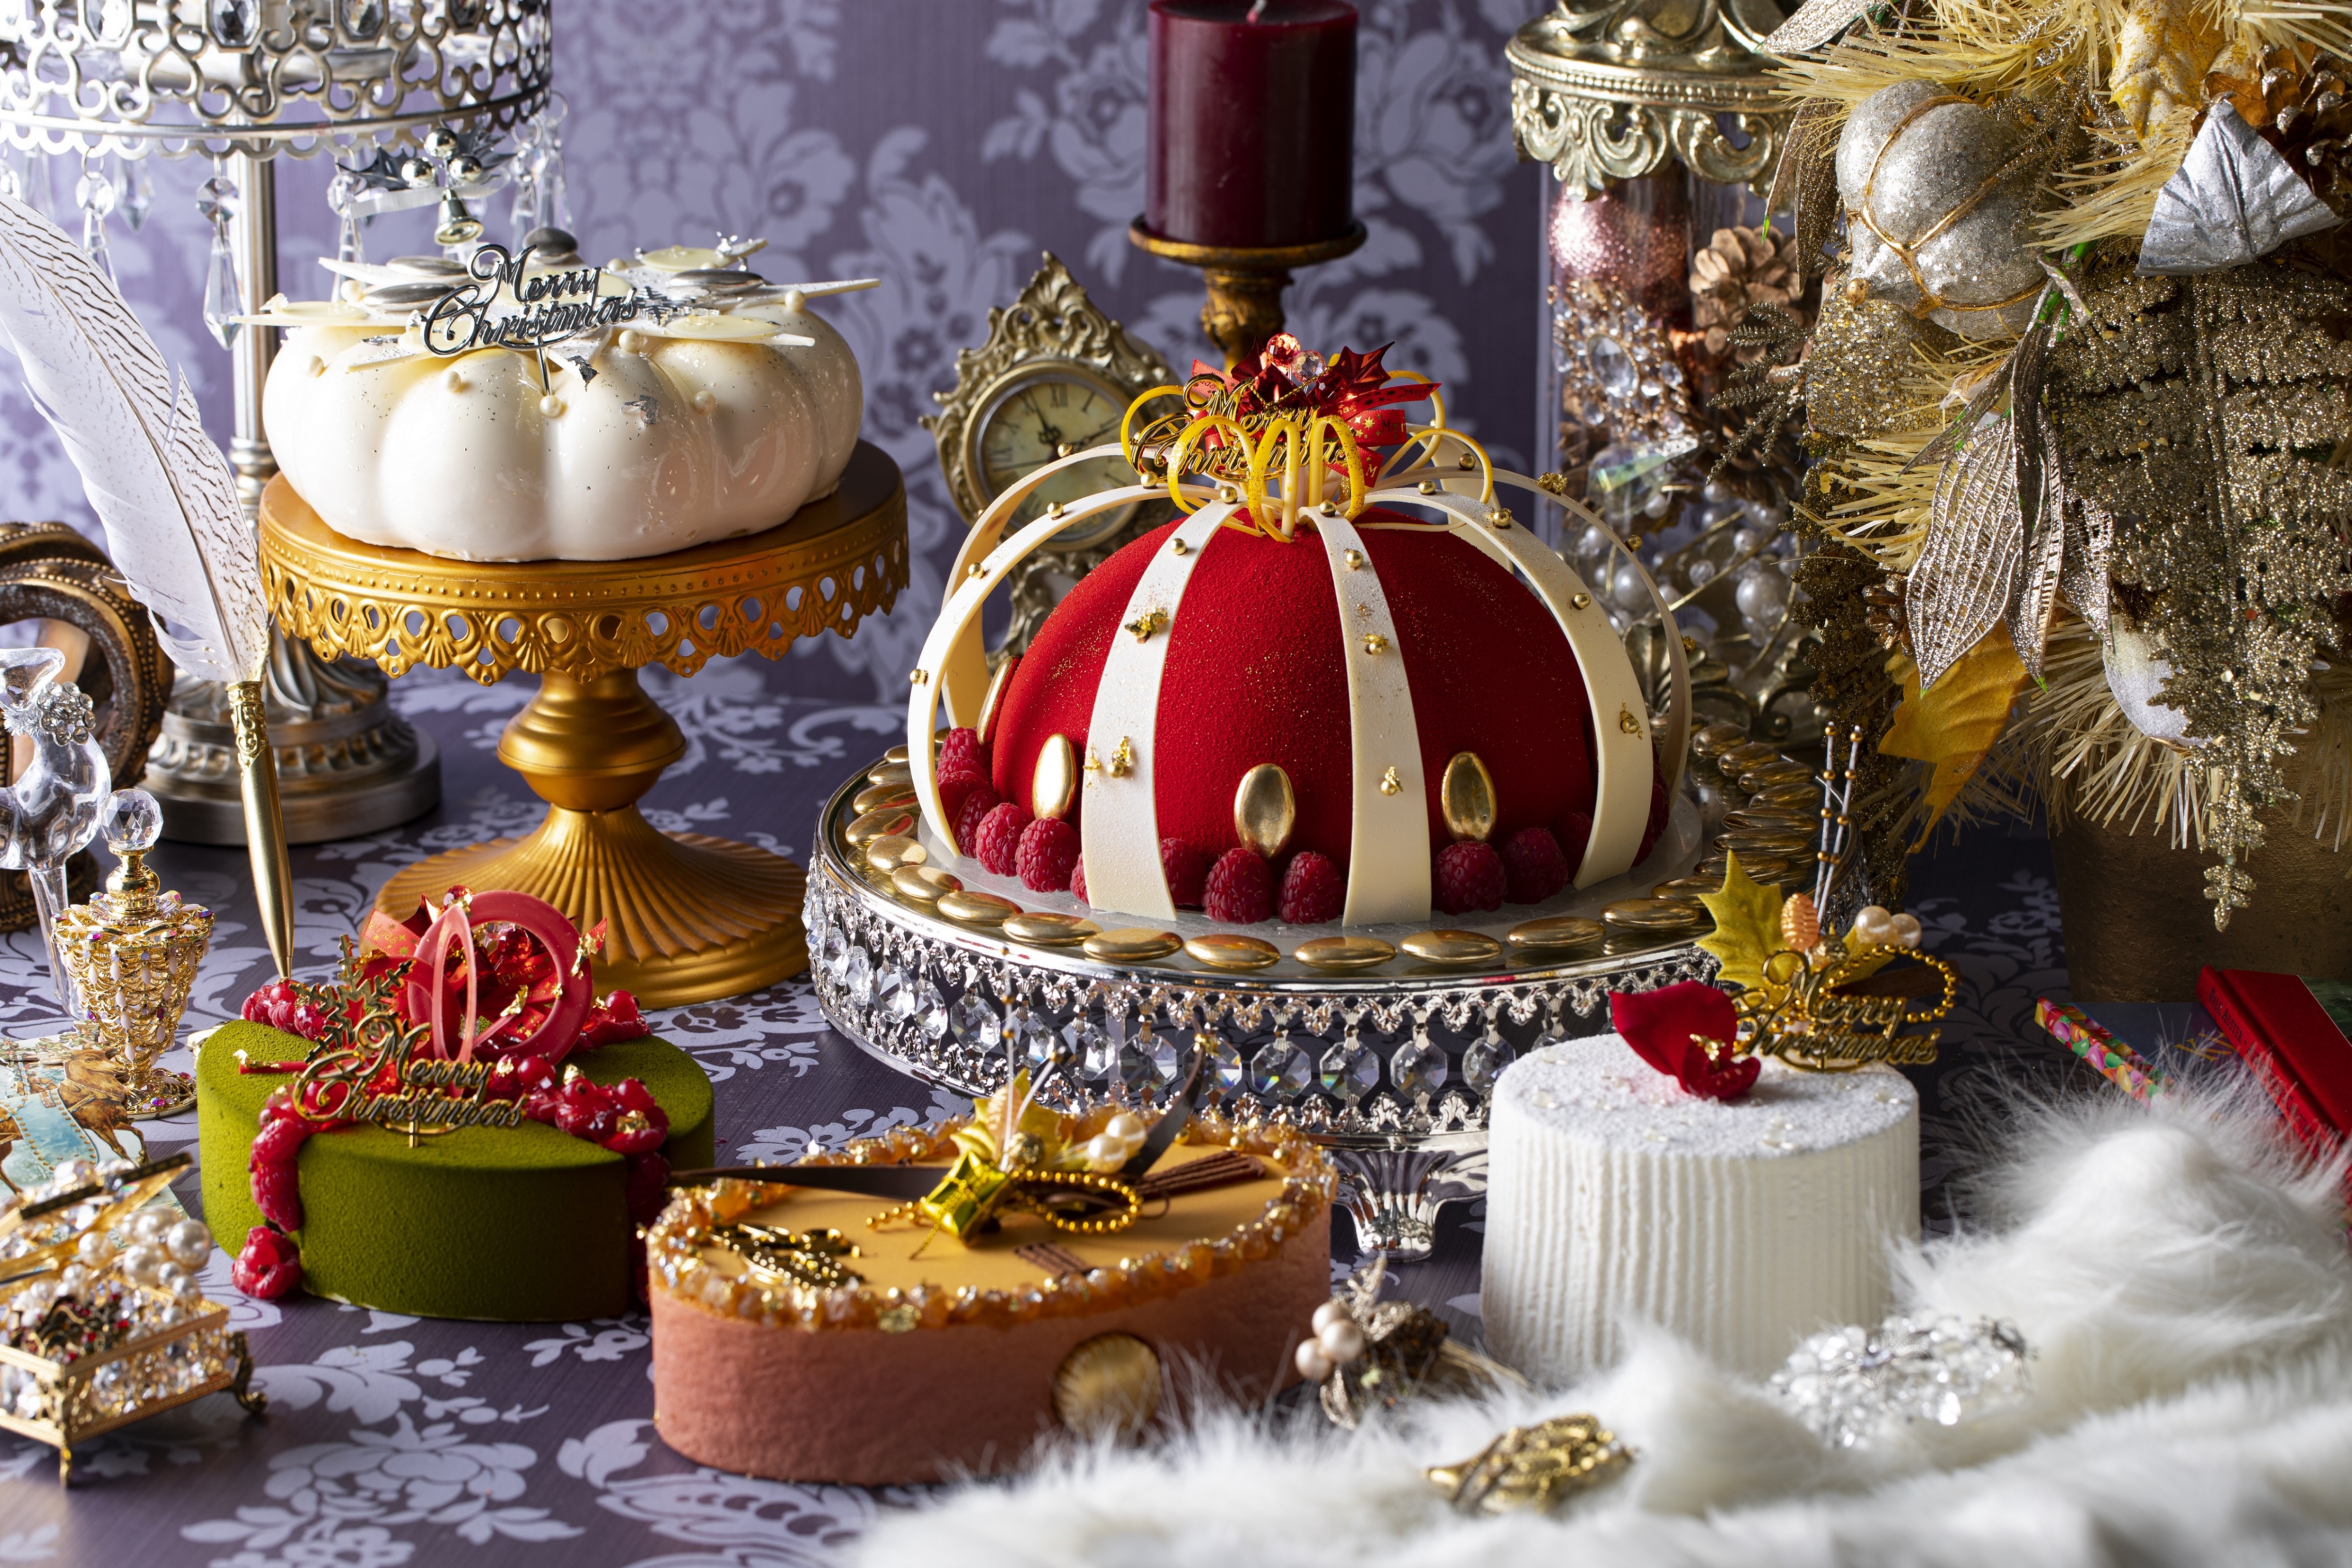 ヒルトン東京 クリスマスケーキ19年のテーマは 女王陛下のロイヤル クリスマス 11月1日より受付開始 ヒルトン東京のプレスリリース